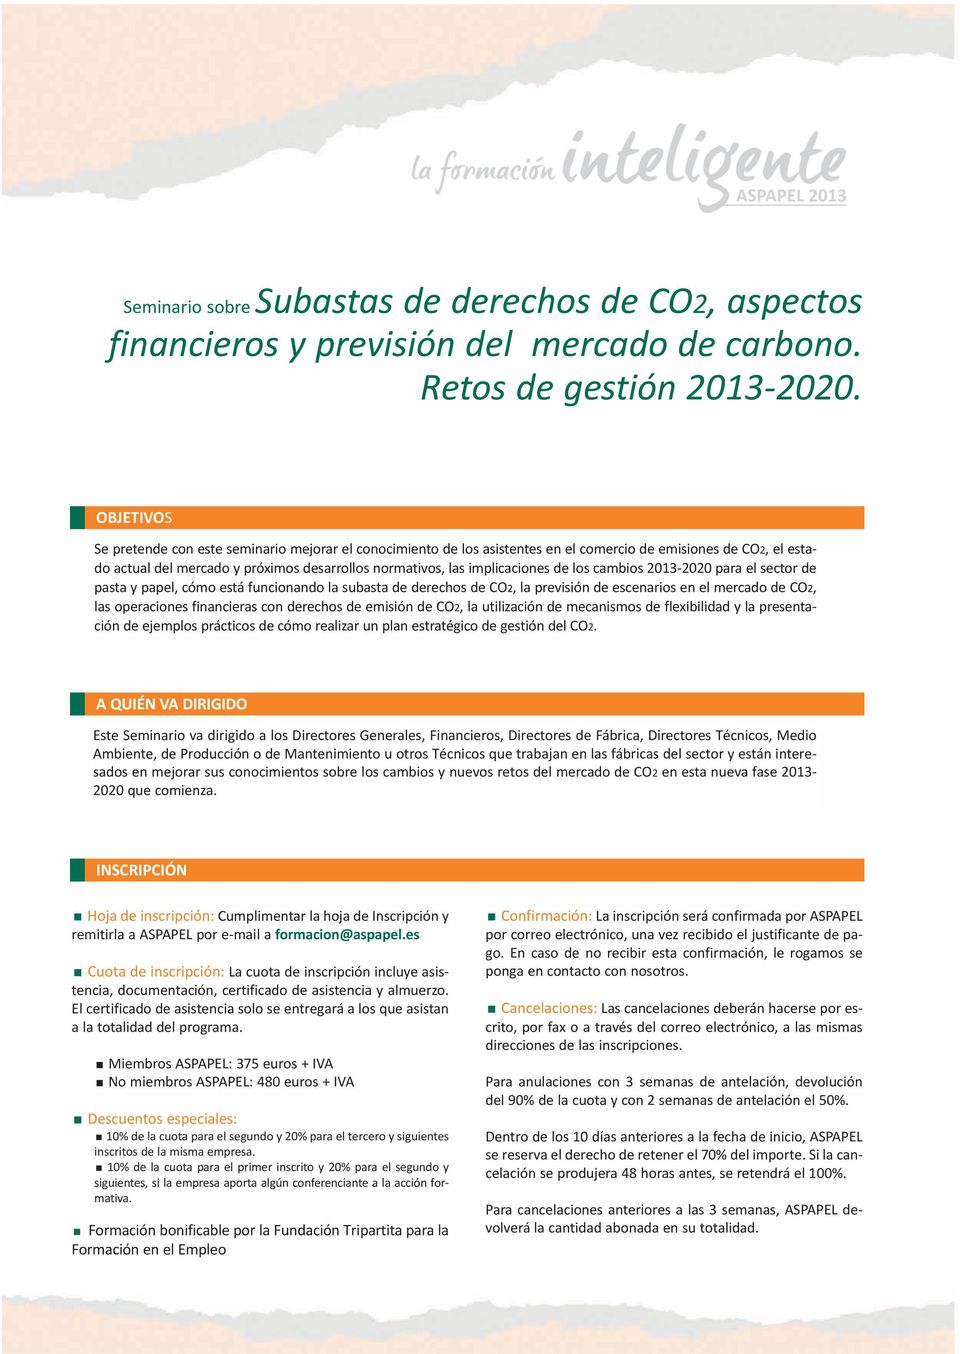 implicaciones de los cambios 2013-2020 para el sector de pasta y papel, cómo está funcionando la subasta de derechos de CO2, la previsión de escenarios en el mercado de CO2, las operaciones